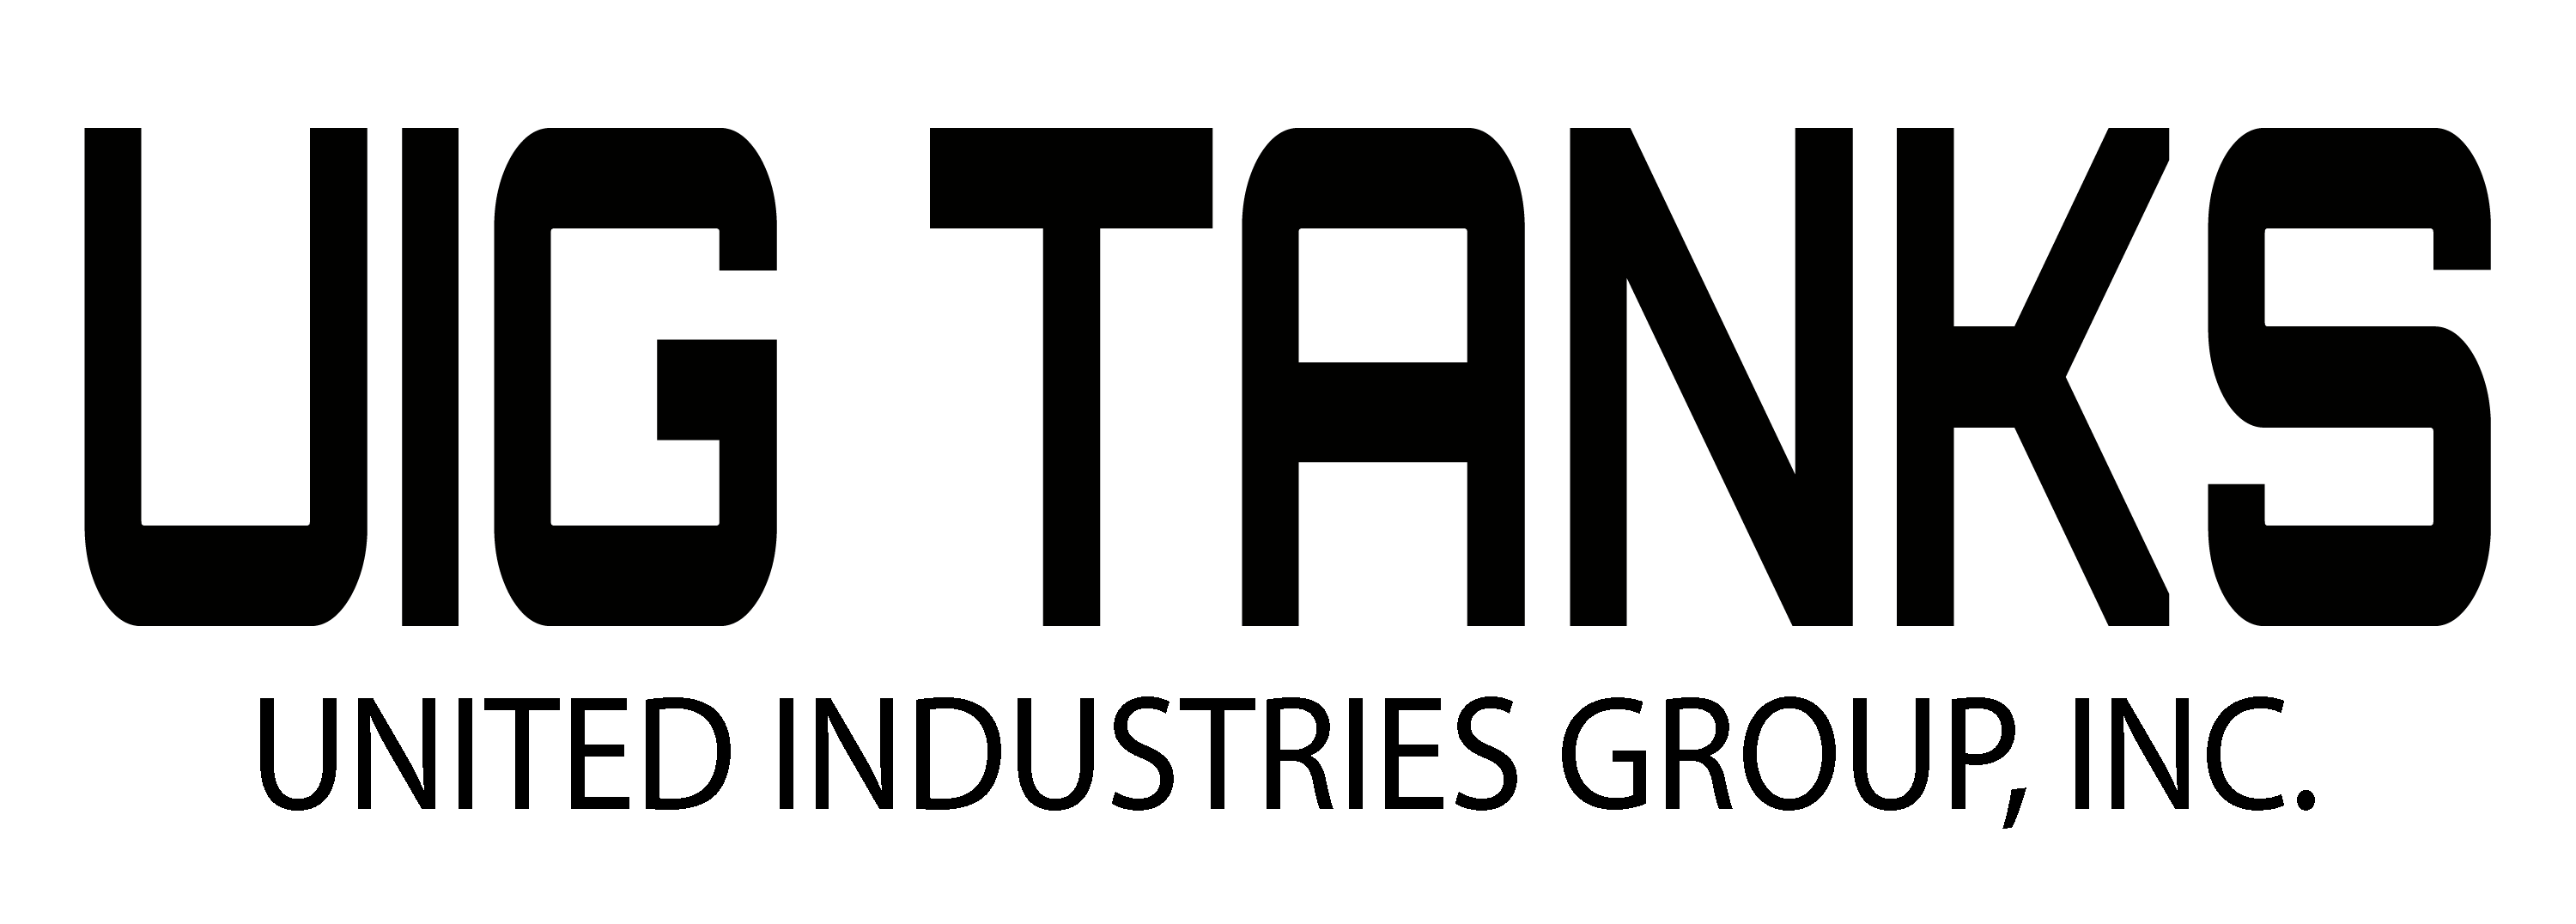 UIG Tanks Logo - Black Text